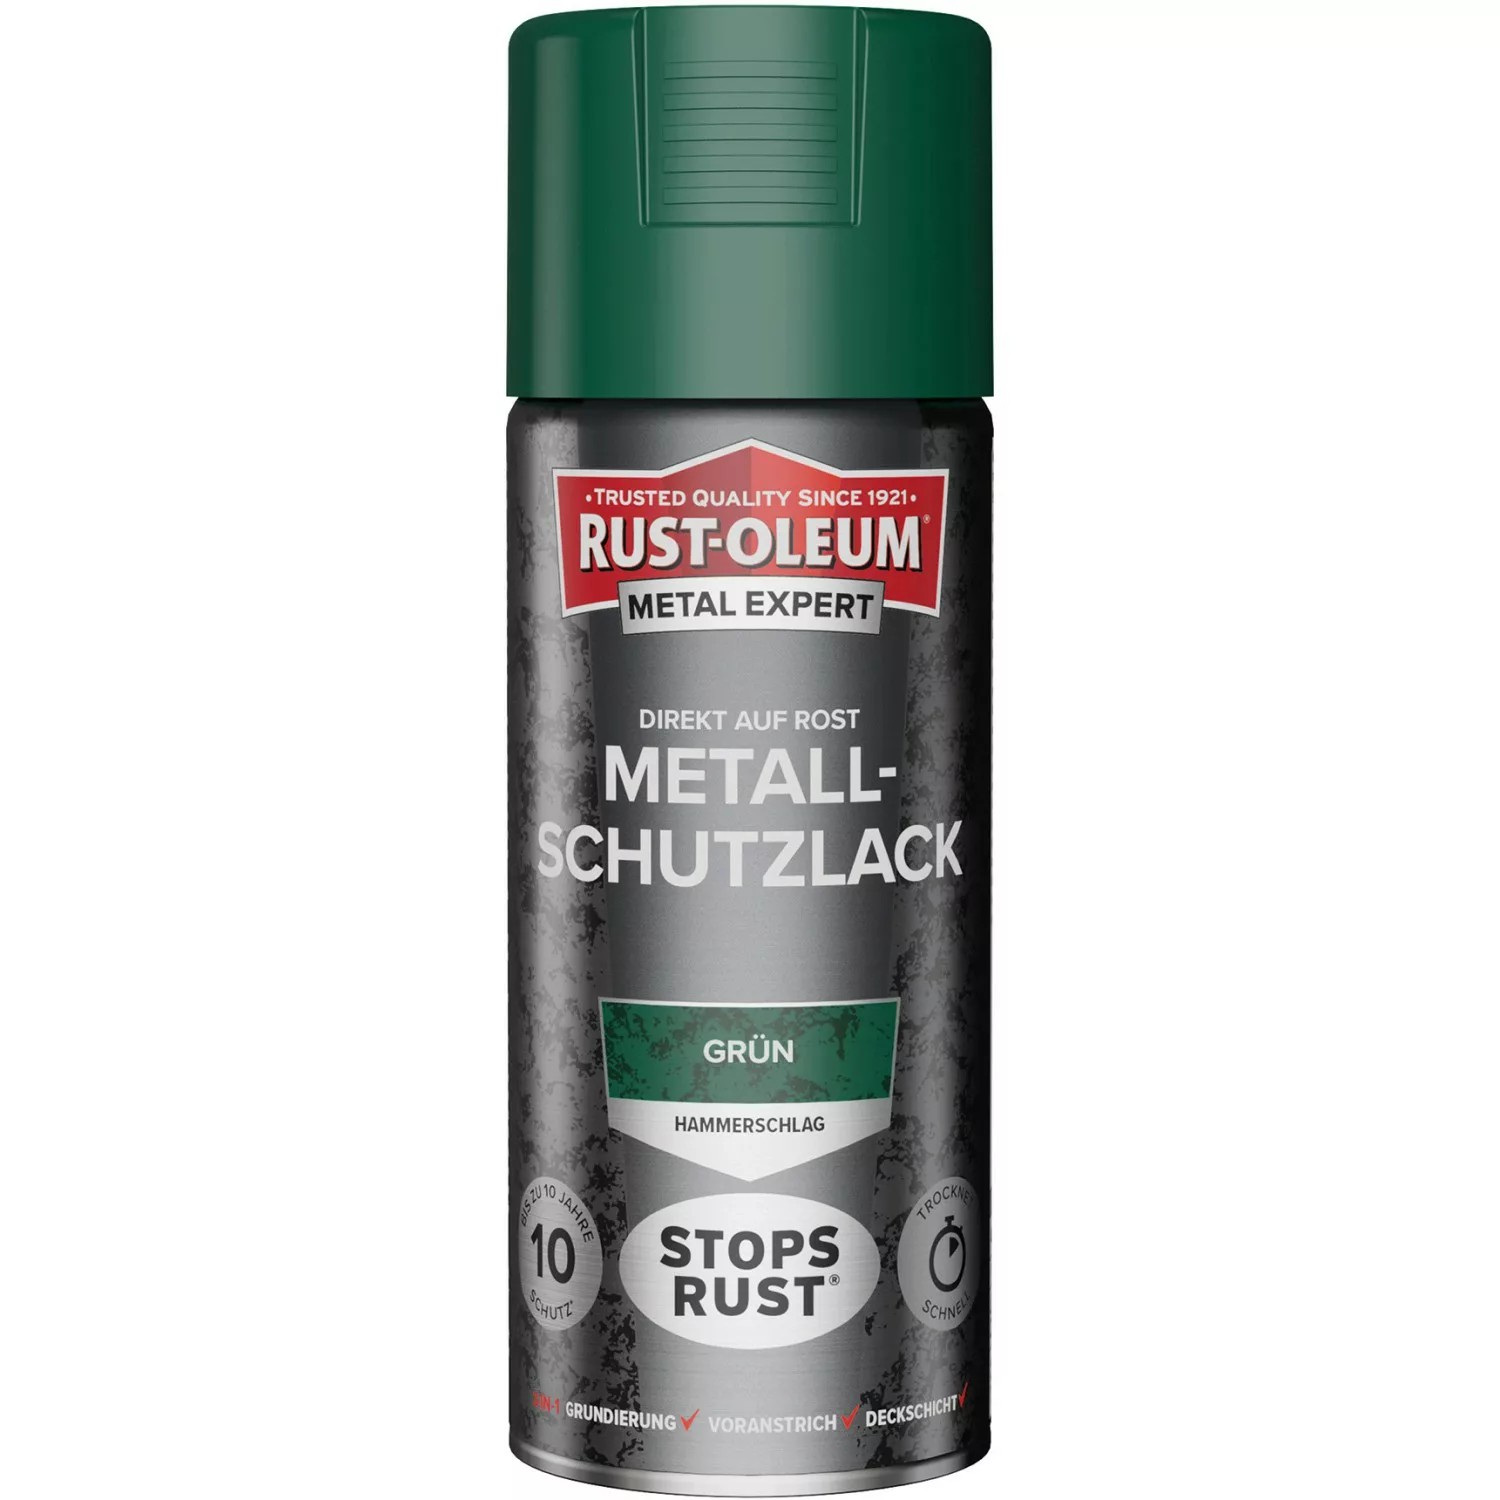 Rust-Oleum Metal Expert Hammerschlag Sprühfarbe Grün 400 ml günstig online kaufen